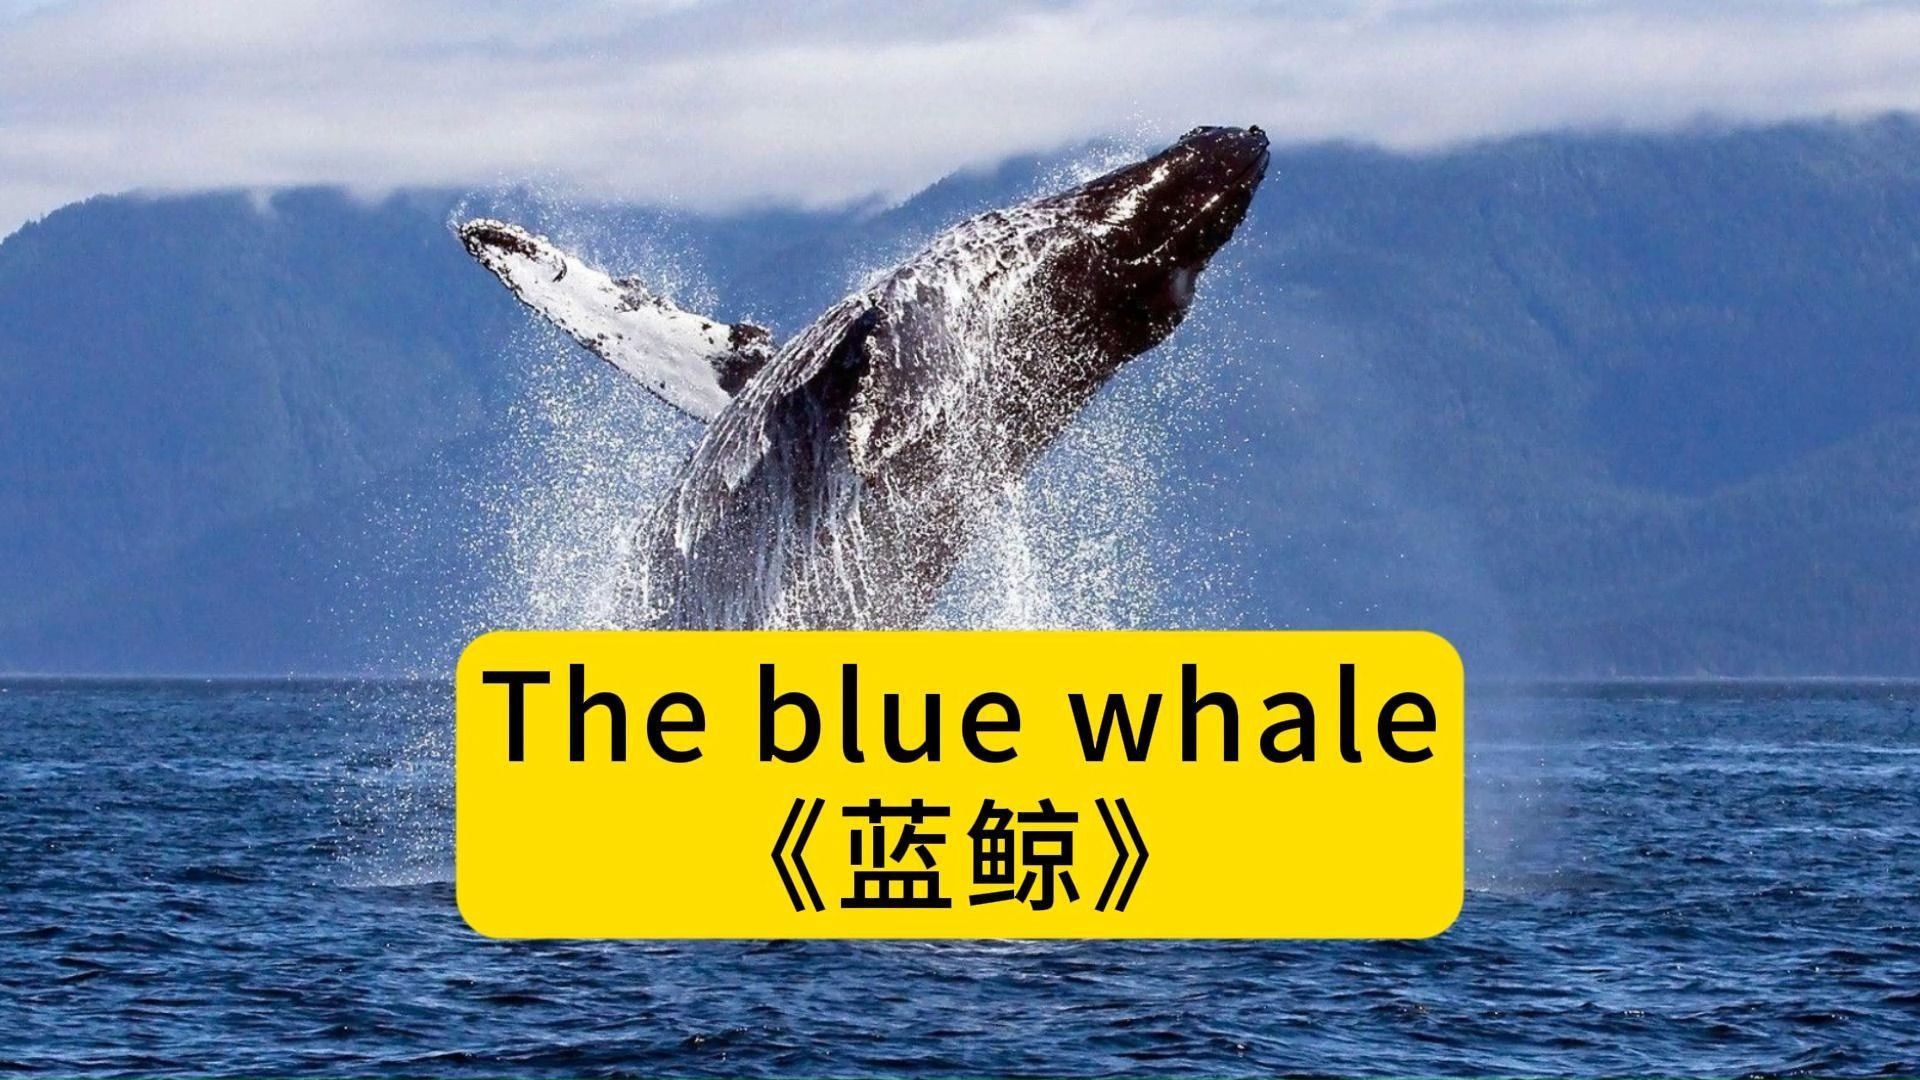 保护蓝鲸英语海报图片